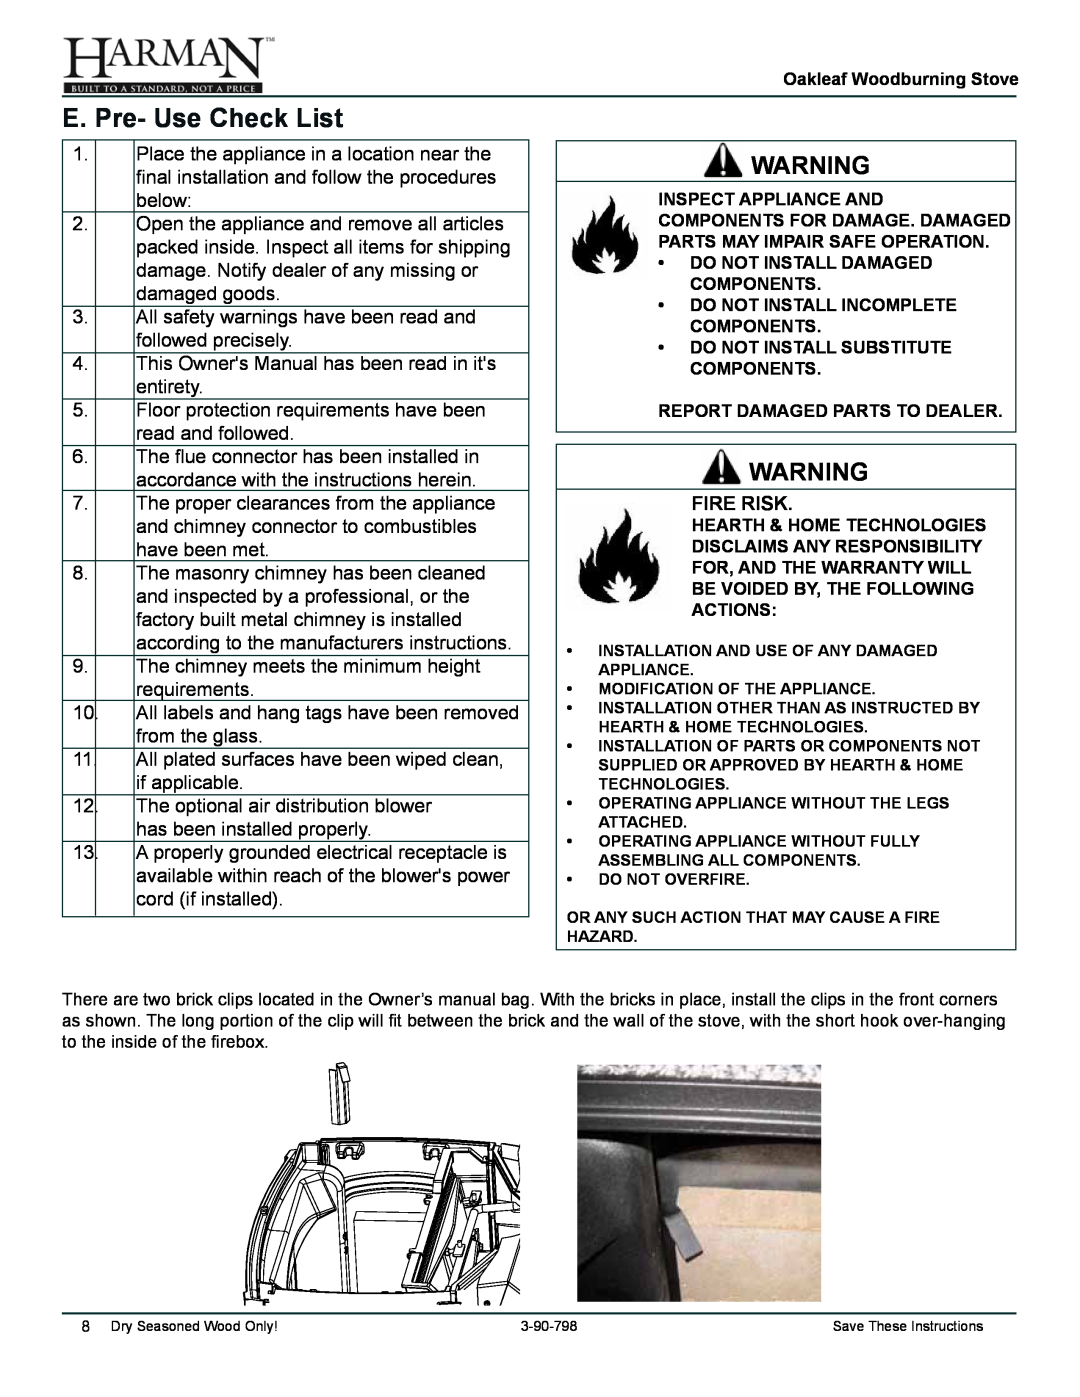 Harman Stove Company 1-90-79700 owner manual E. Pre- Use Check List, Fire Risk 